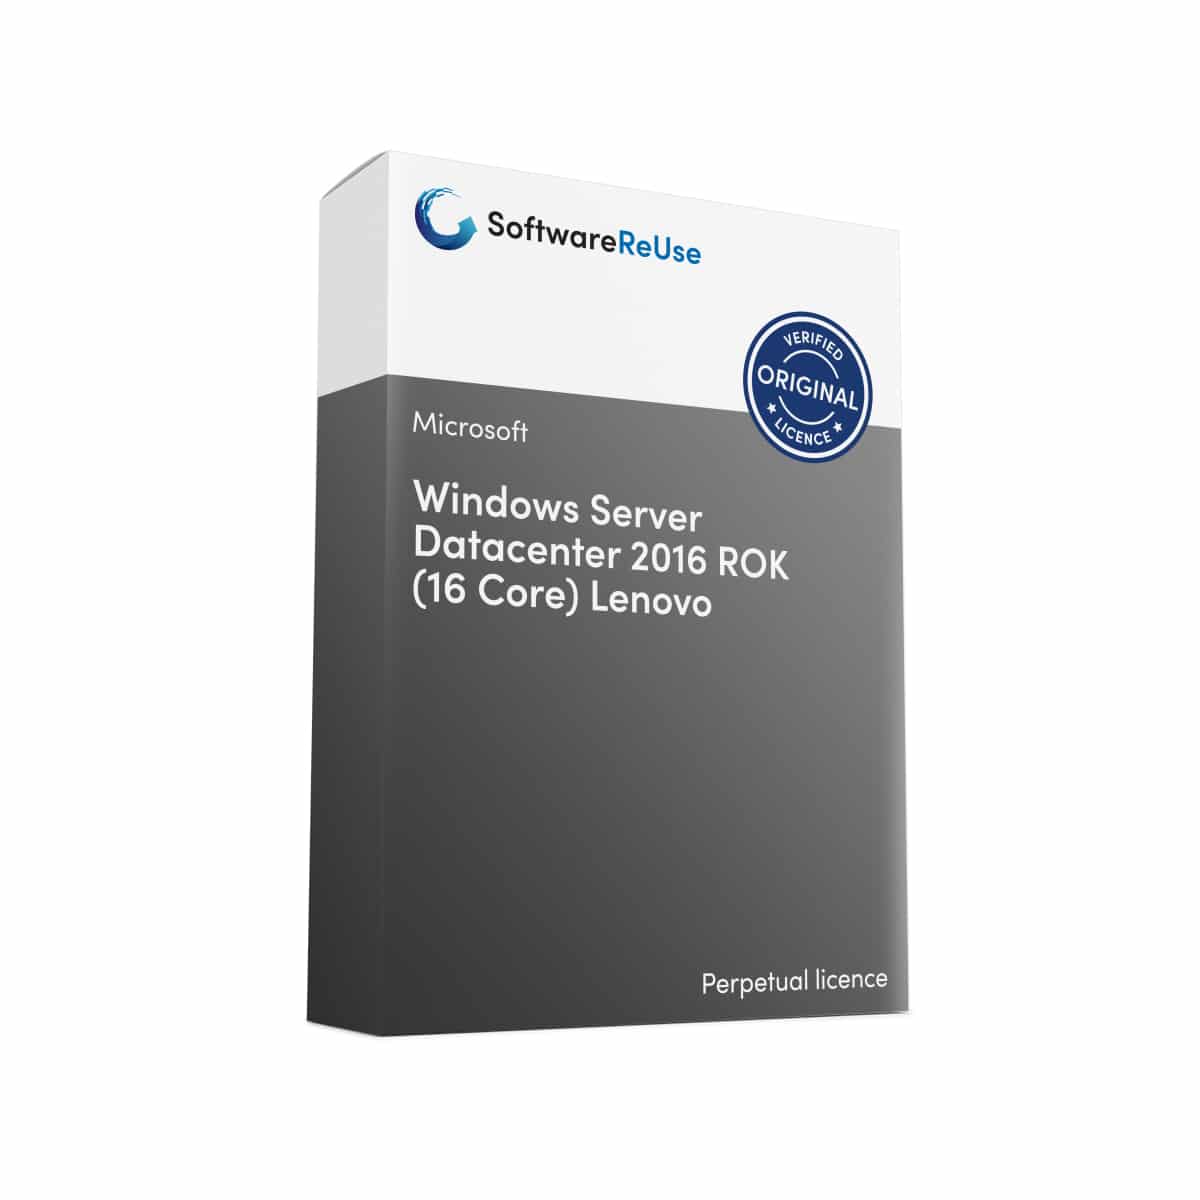 Windows Server Datacenter 2016 ROK 16 Core Lenovo – EN